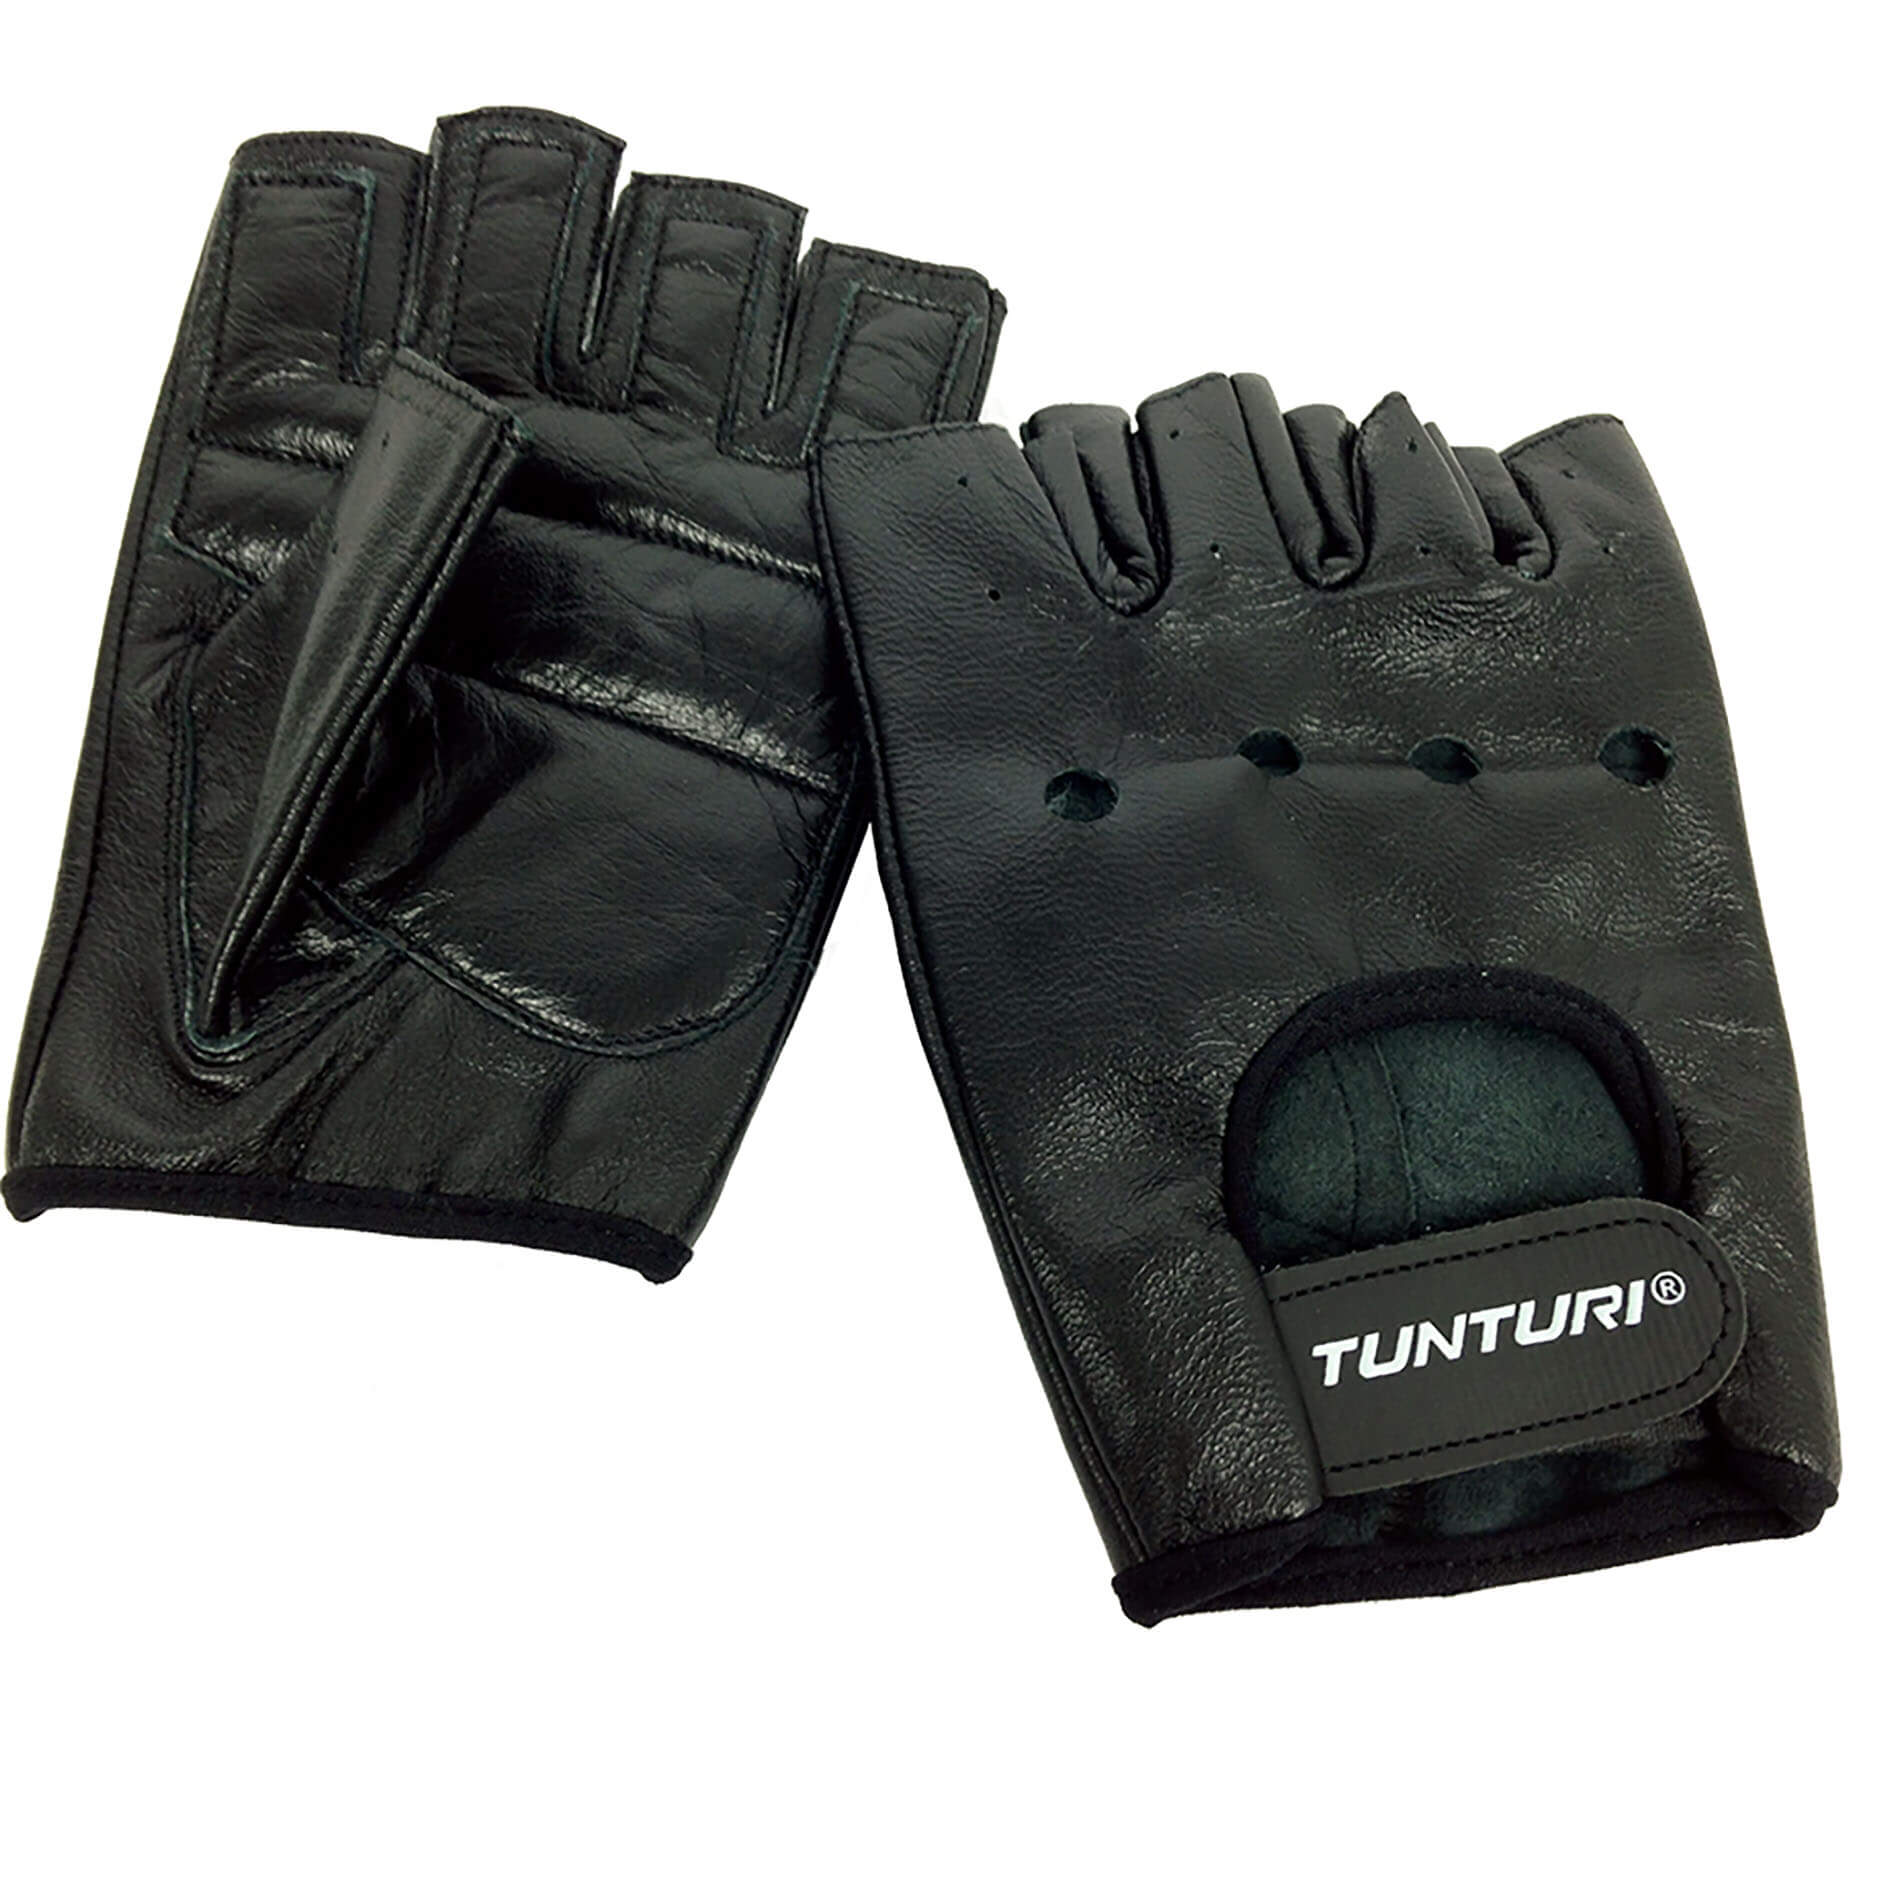 gewelddadig effect verdrietig Fitness handschoenen -Fit Sport - Tunturi Fitness